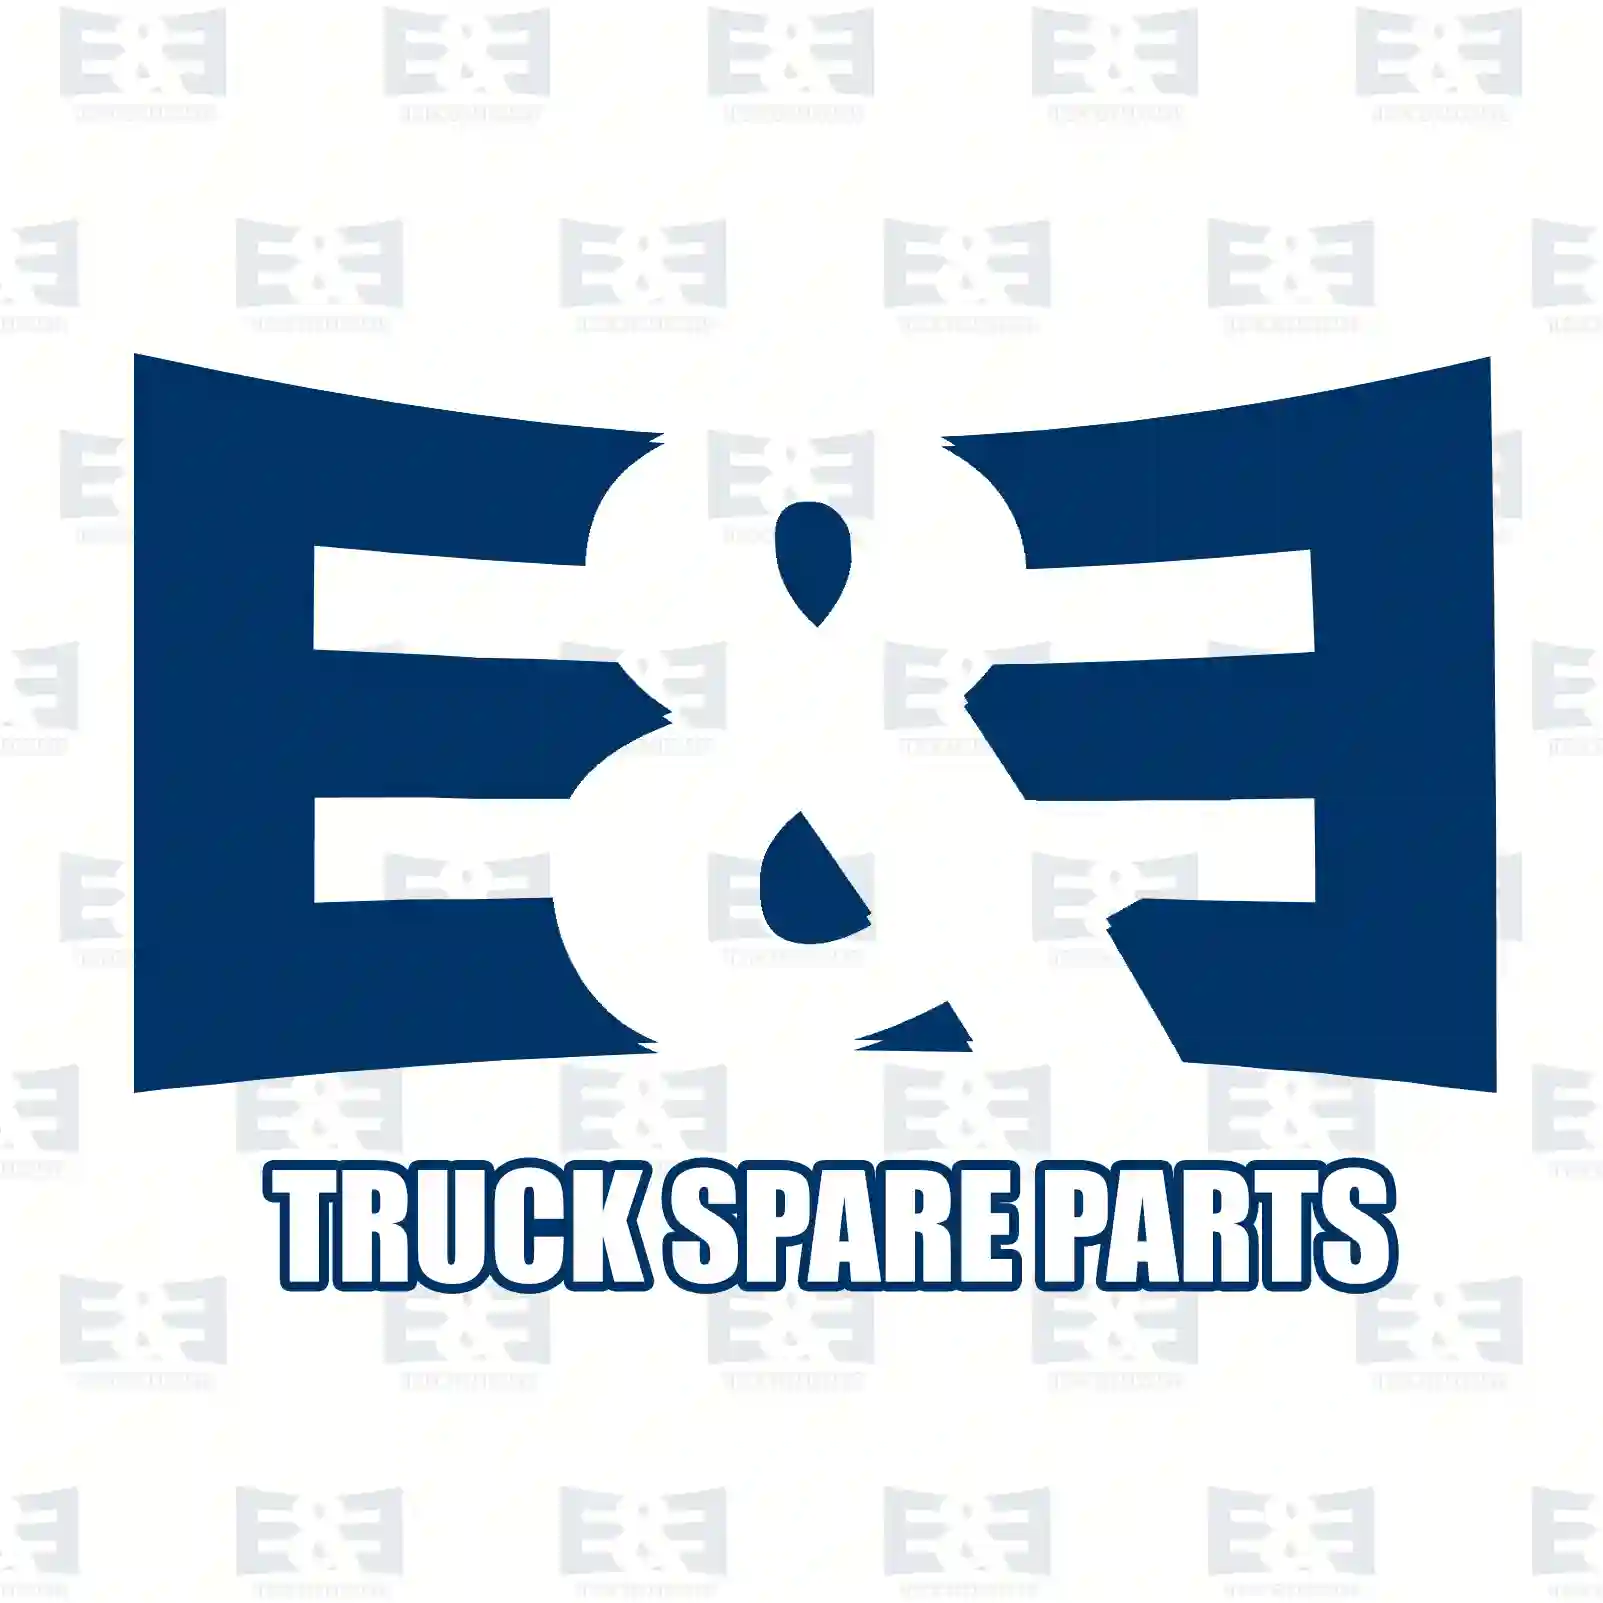 Screw plug, 2E2206157, 06080420611, 000908030000, 000908030002 ||  2E2206157 E&E Truck Spare Parts | Truck Spare Parts, Auotomotive Spare Parts Screw plug, 2E2206157, 06080420611, 000908030000, 000908030002 ||  2E2206157 E&E Truck Spare Parts | Truck Spare Parts, Auotomotive Spare Parts